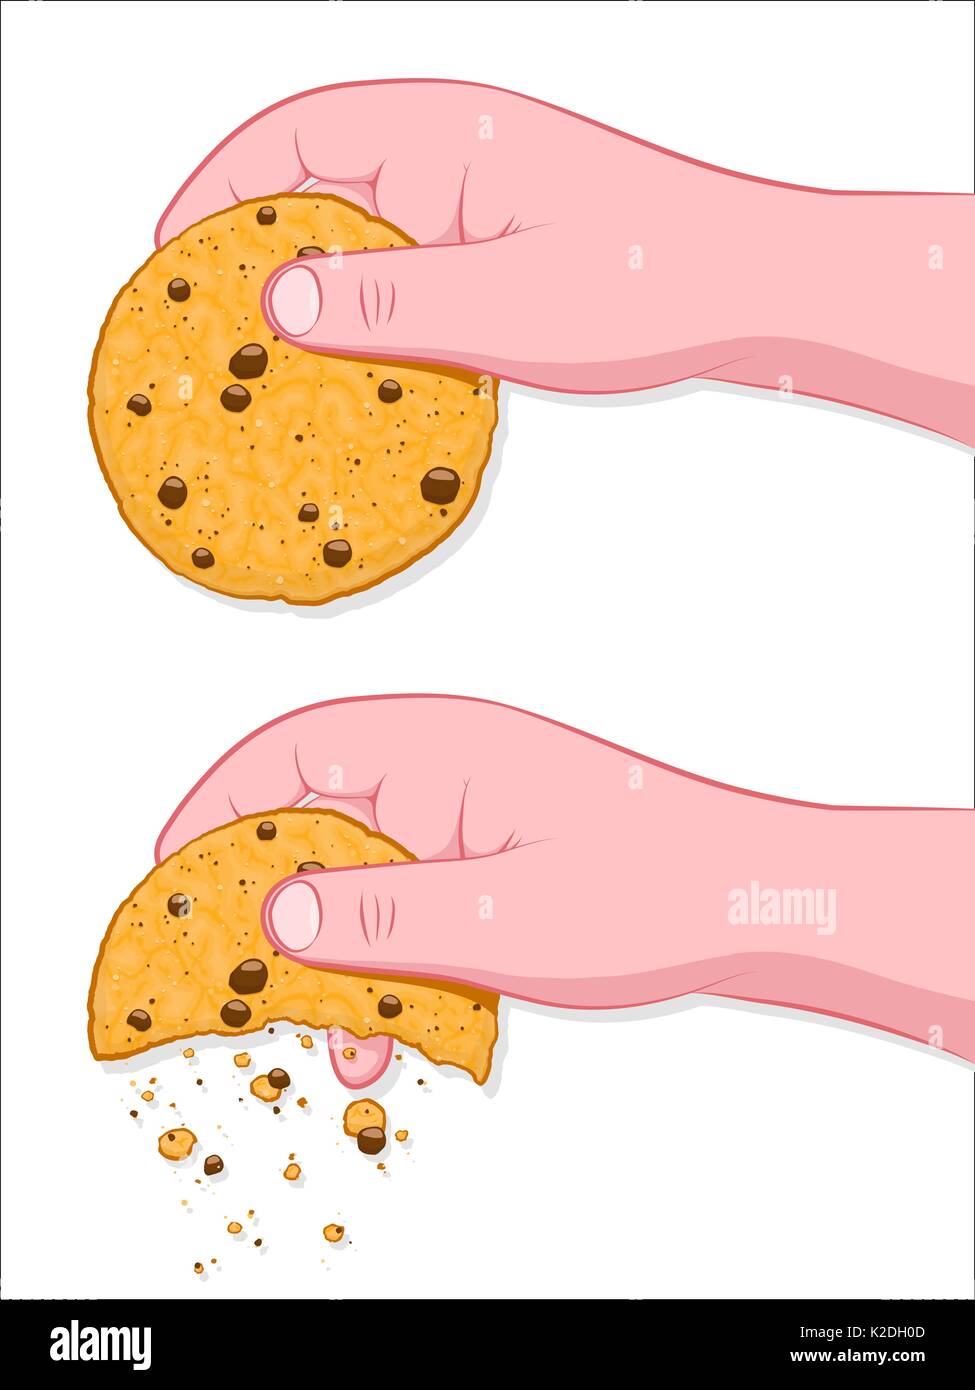 Die ist die Weise, die der Cookie Crumbles, menschliche Hand zerbröckeln Cookie auf Weiß - Abbildung Stock Vektor